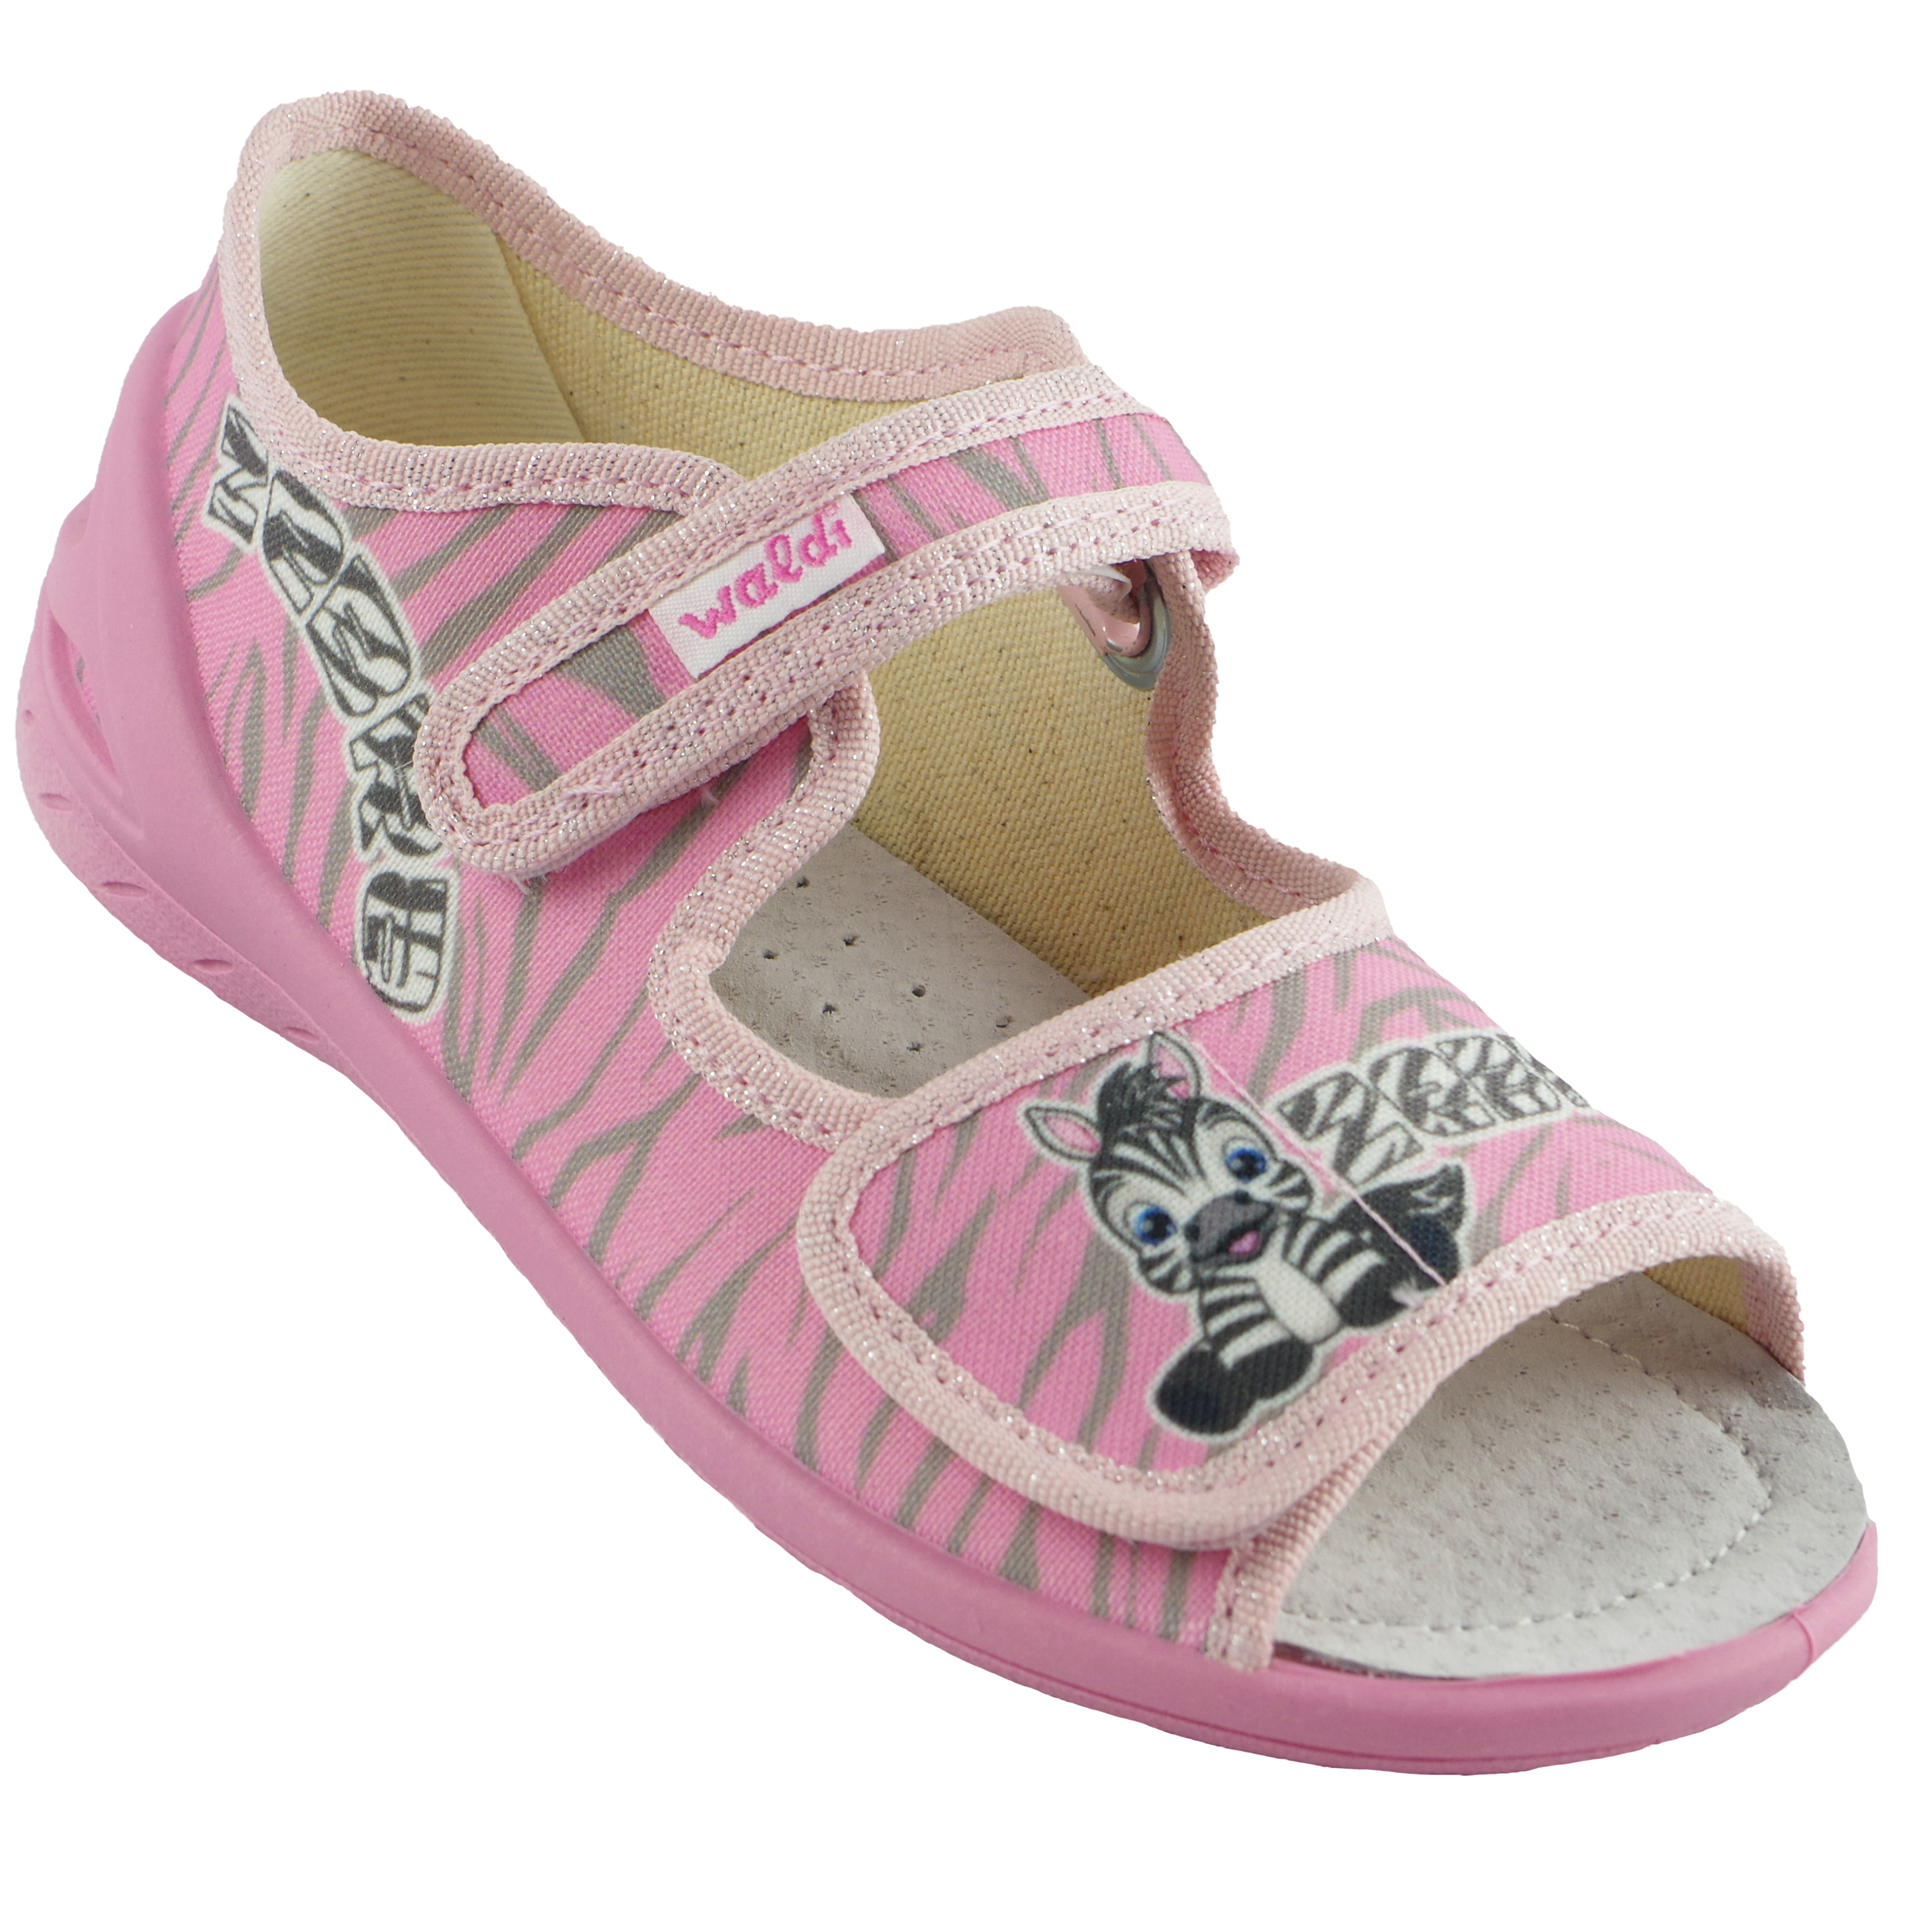 Текстильная обувь для девочек Тапочки детские (1820) цвет Розовый 23-30 размеры – Sole Kids. Фото 1